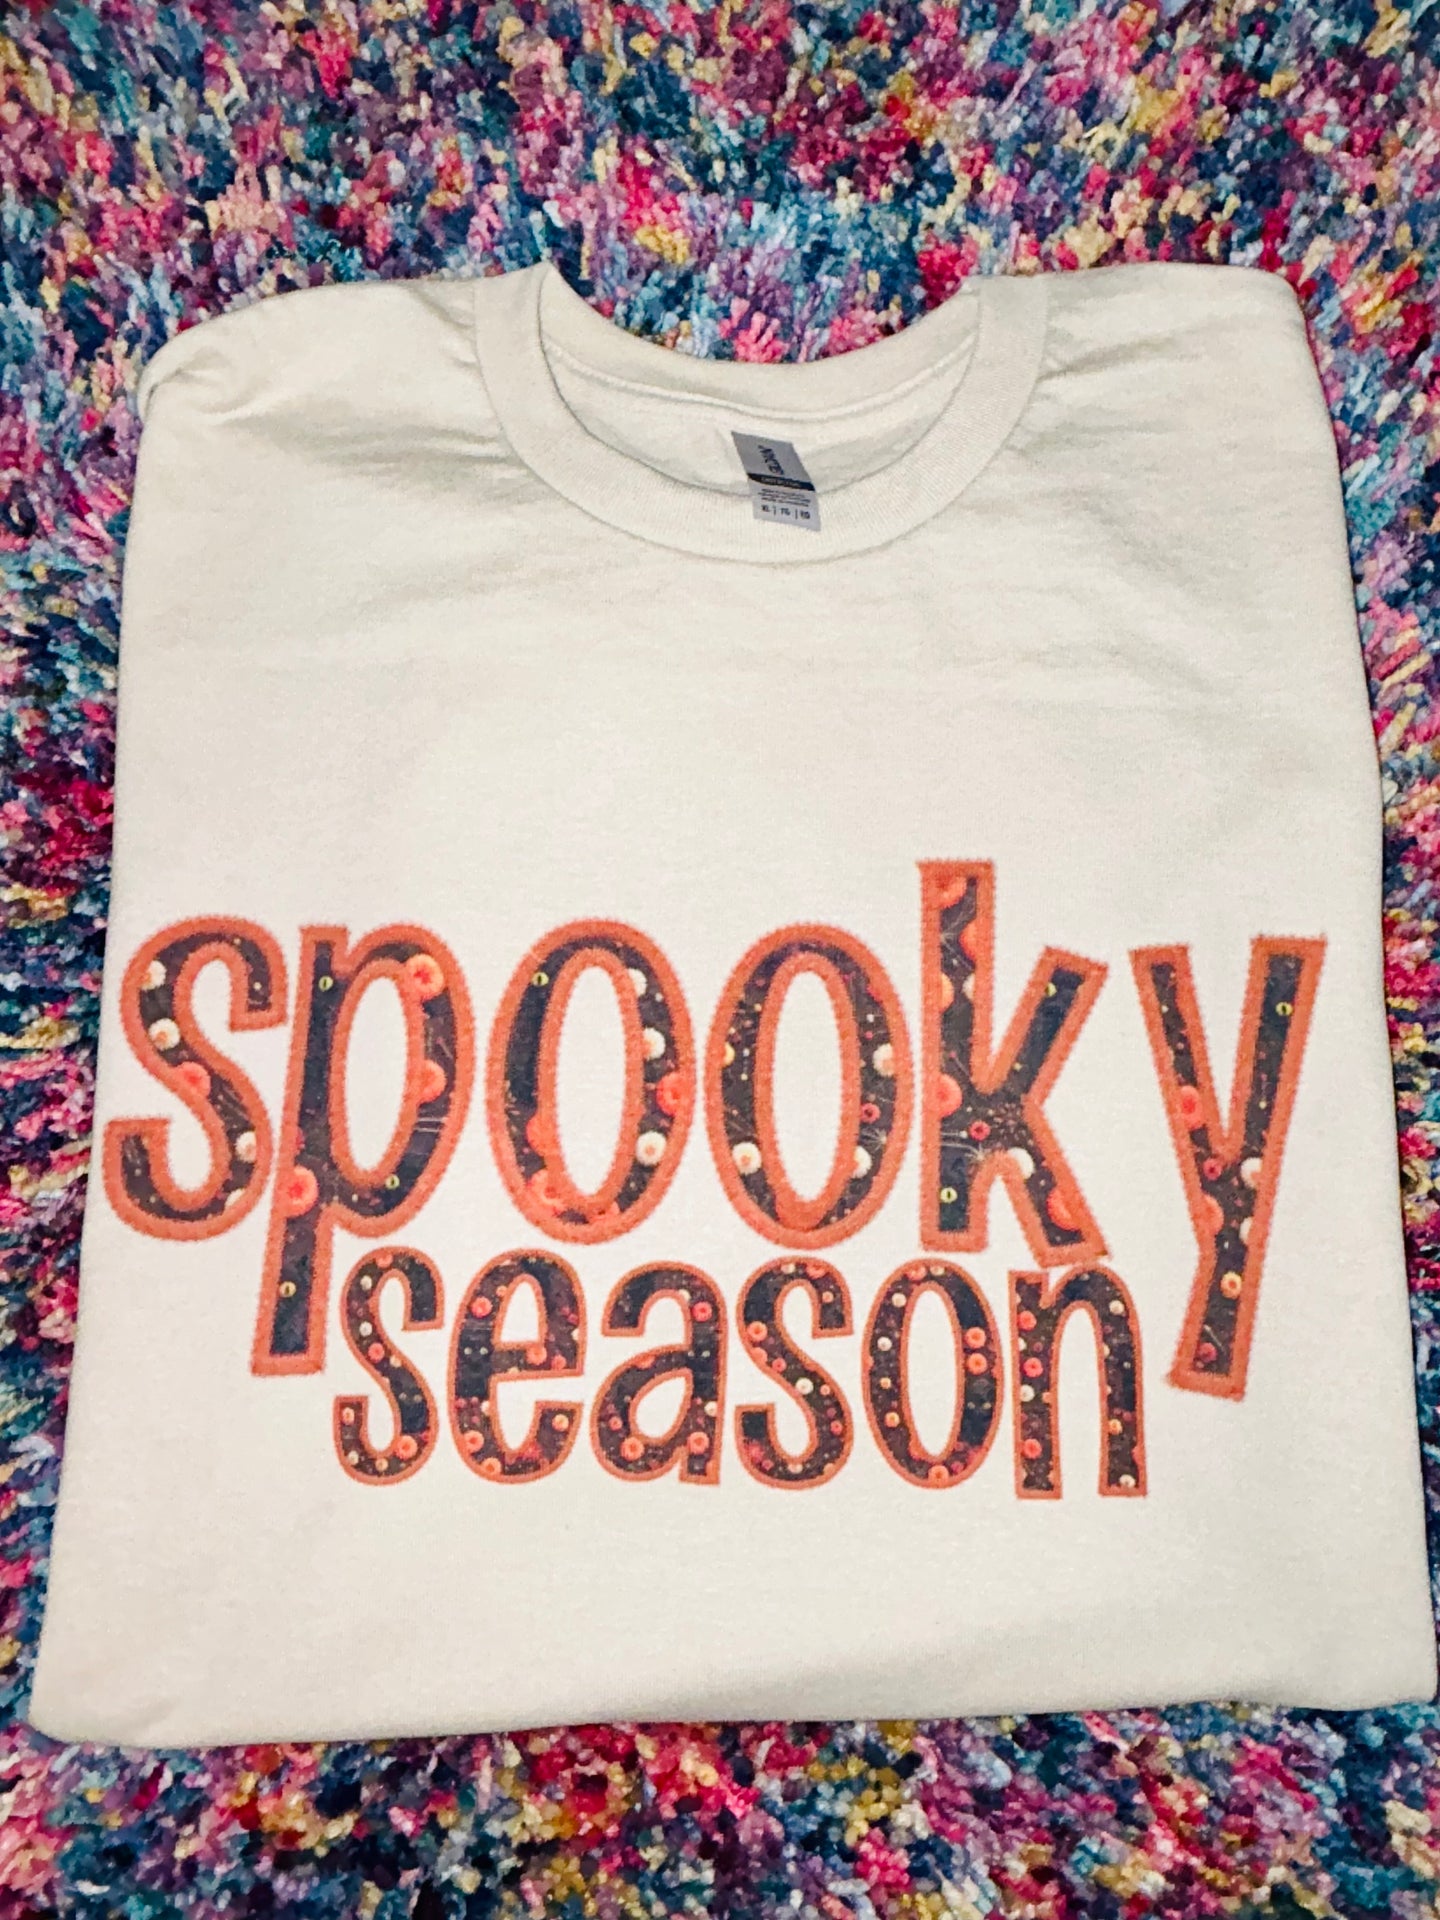 Spooky Season PREORDER